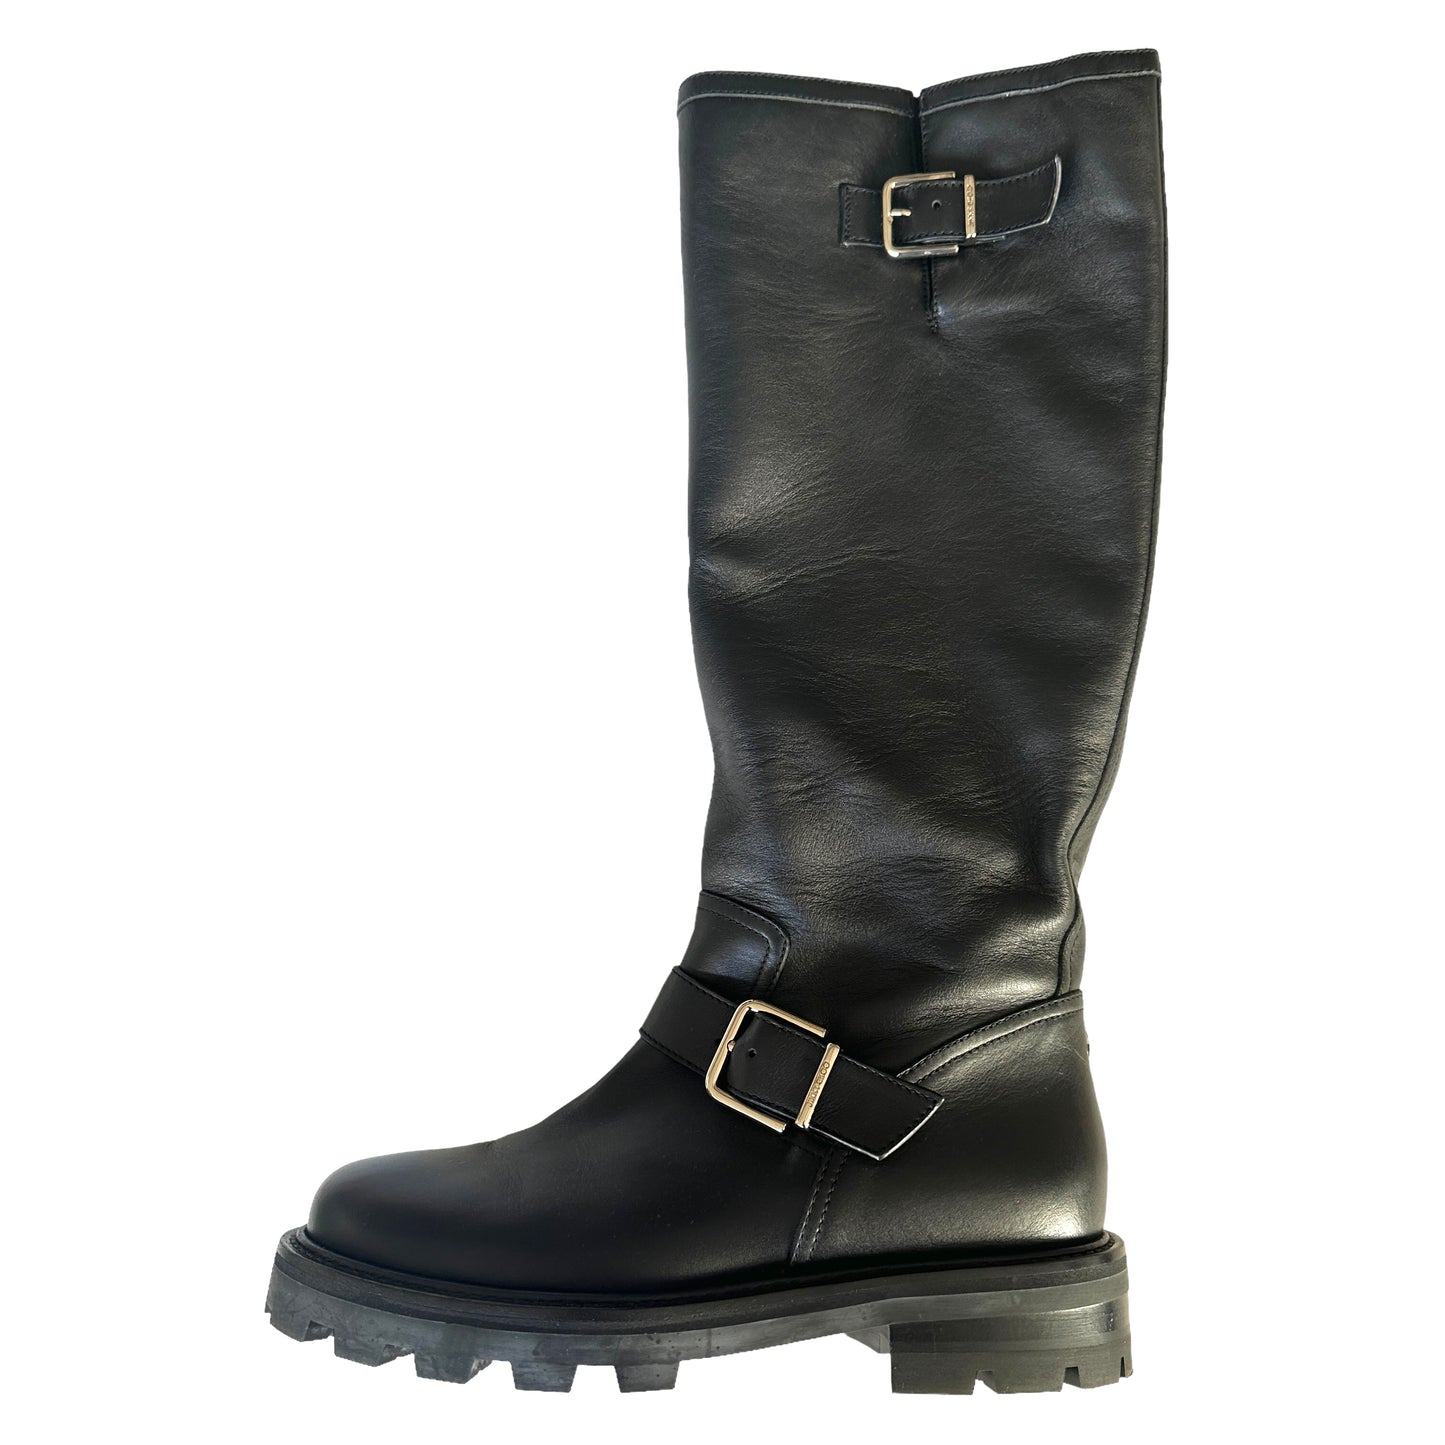 Tall Black Boots - 8.5